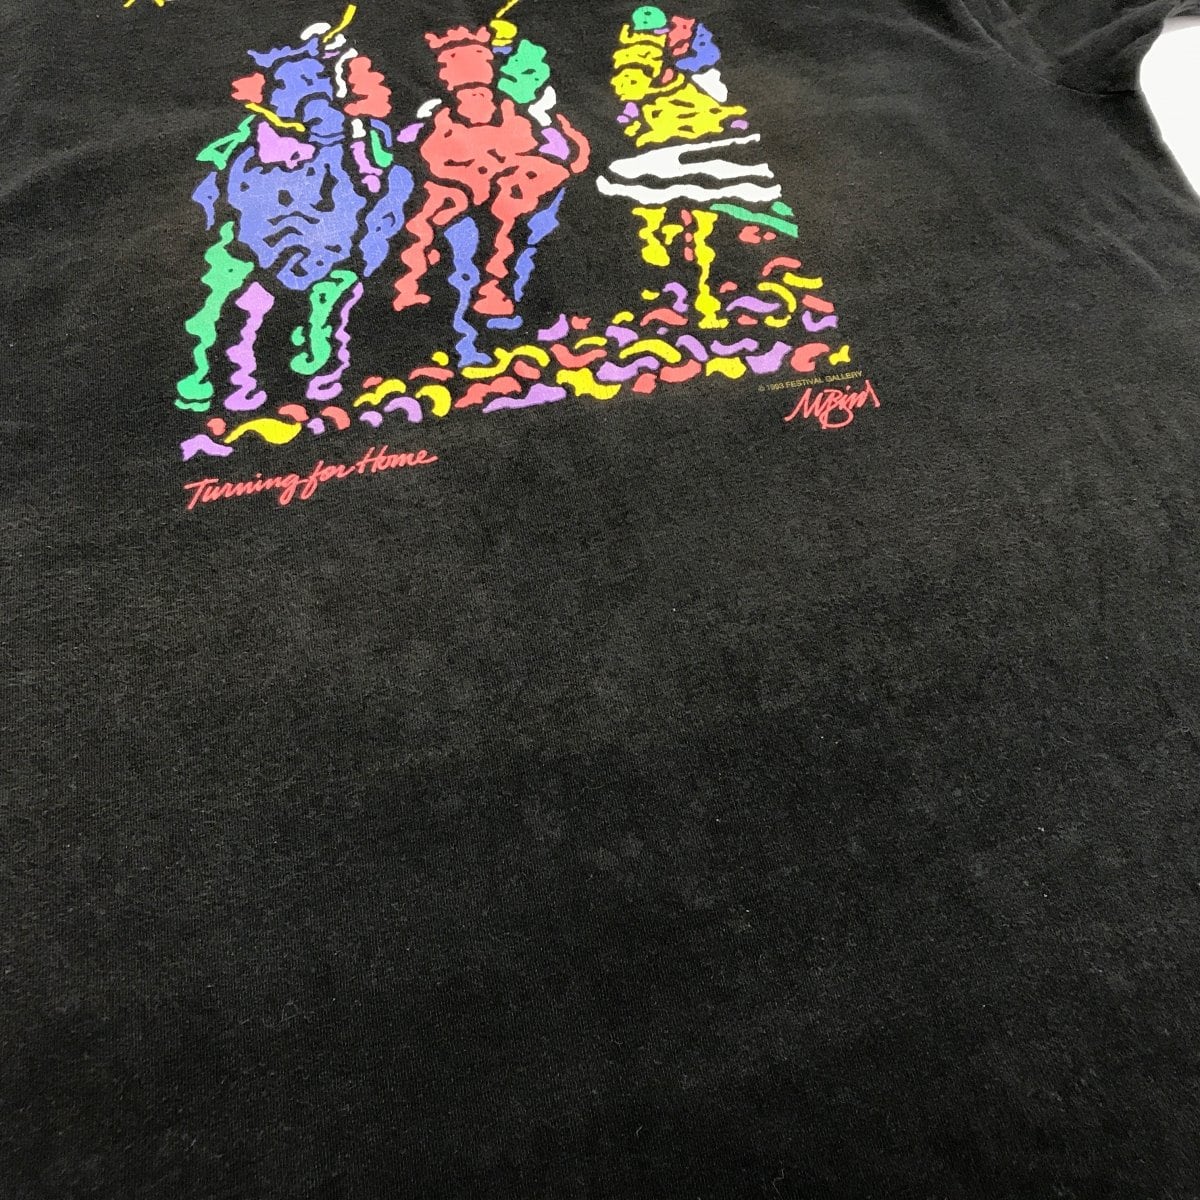 【超希少】レア 80s ポップアート Tシャツ フルーツオブザルーム USA製